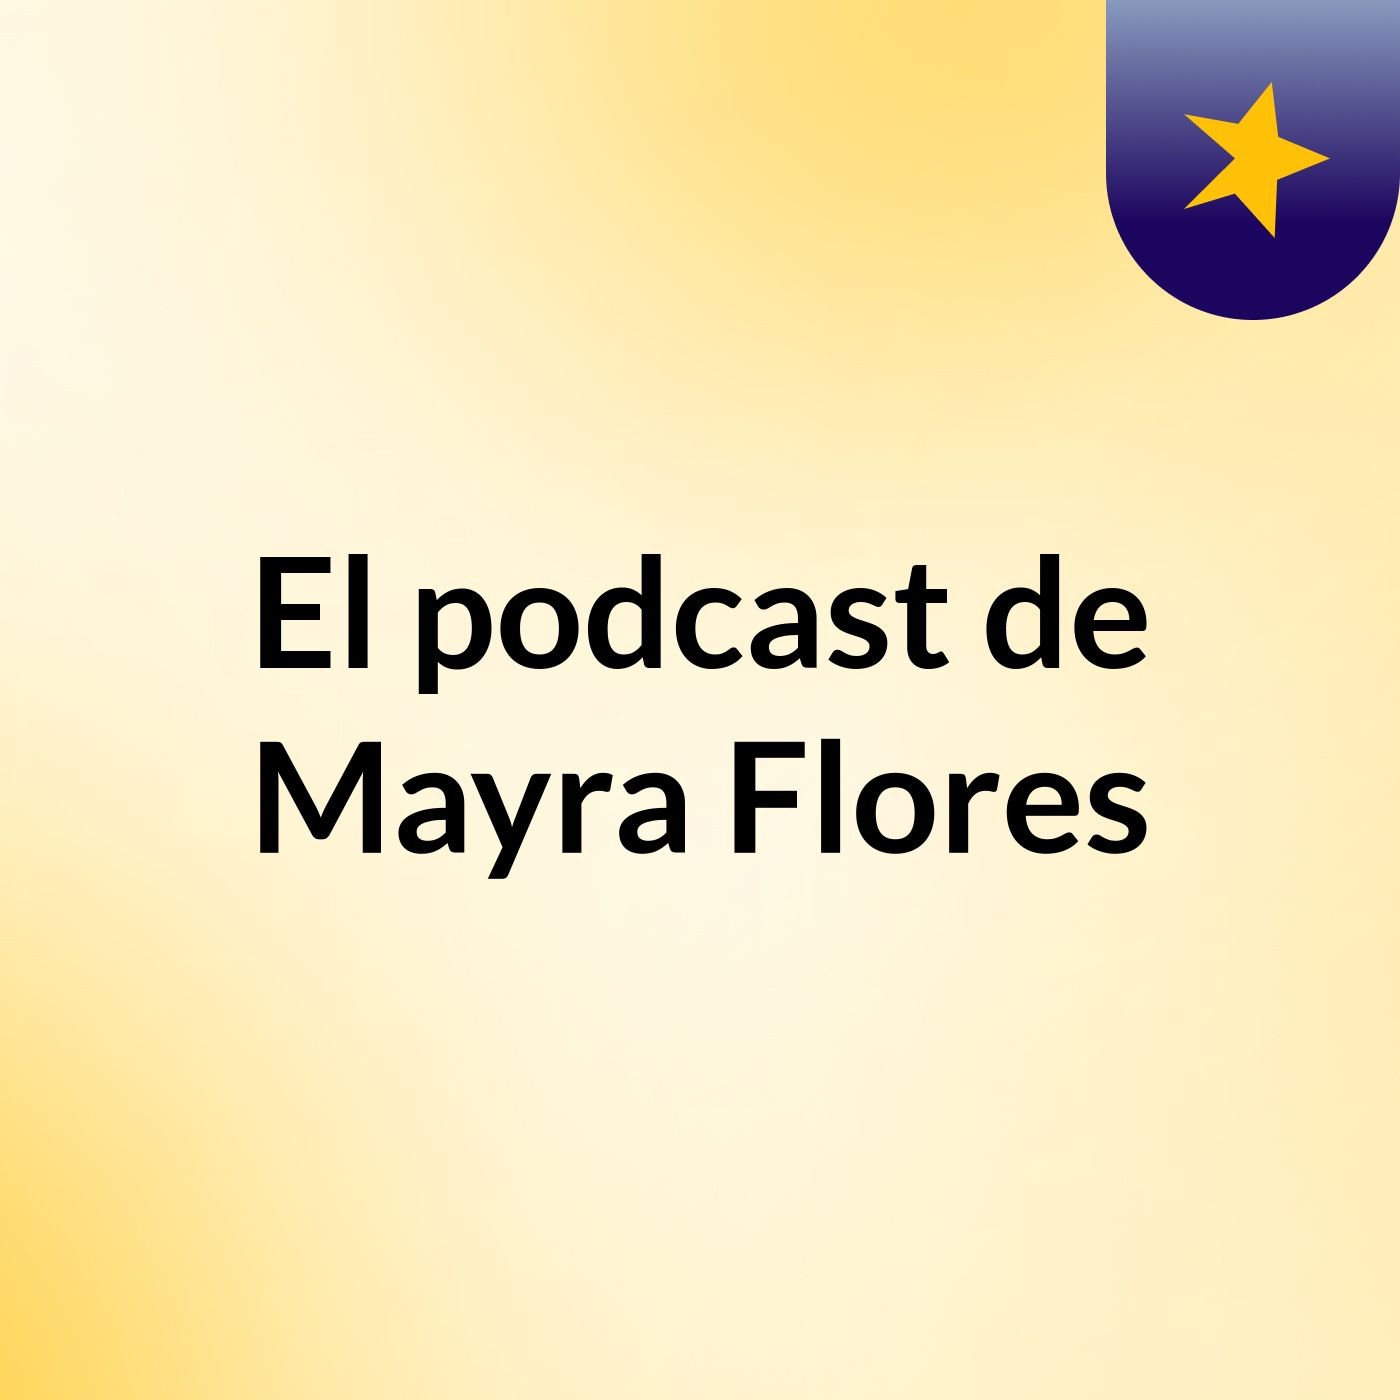 El podcast de Mayra Flores